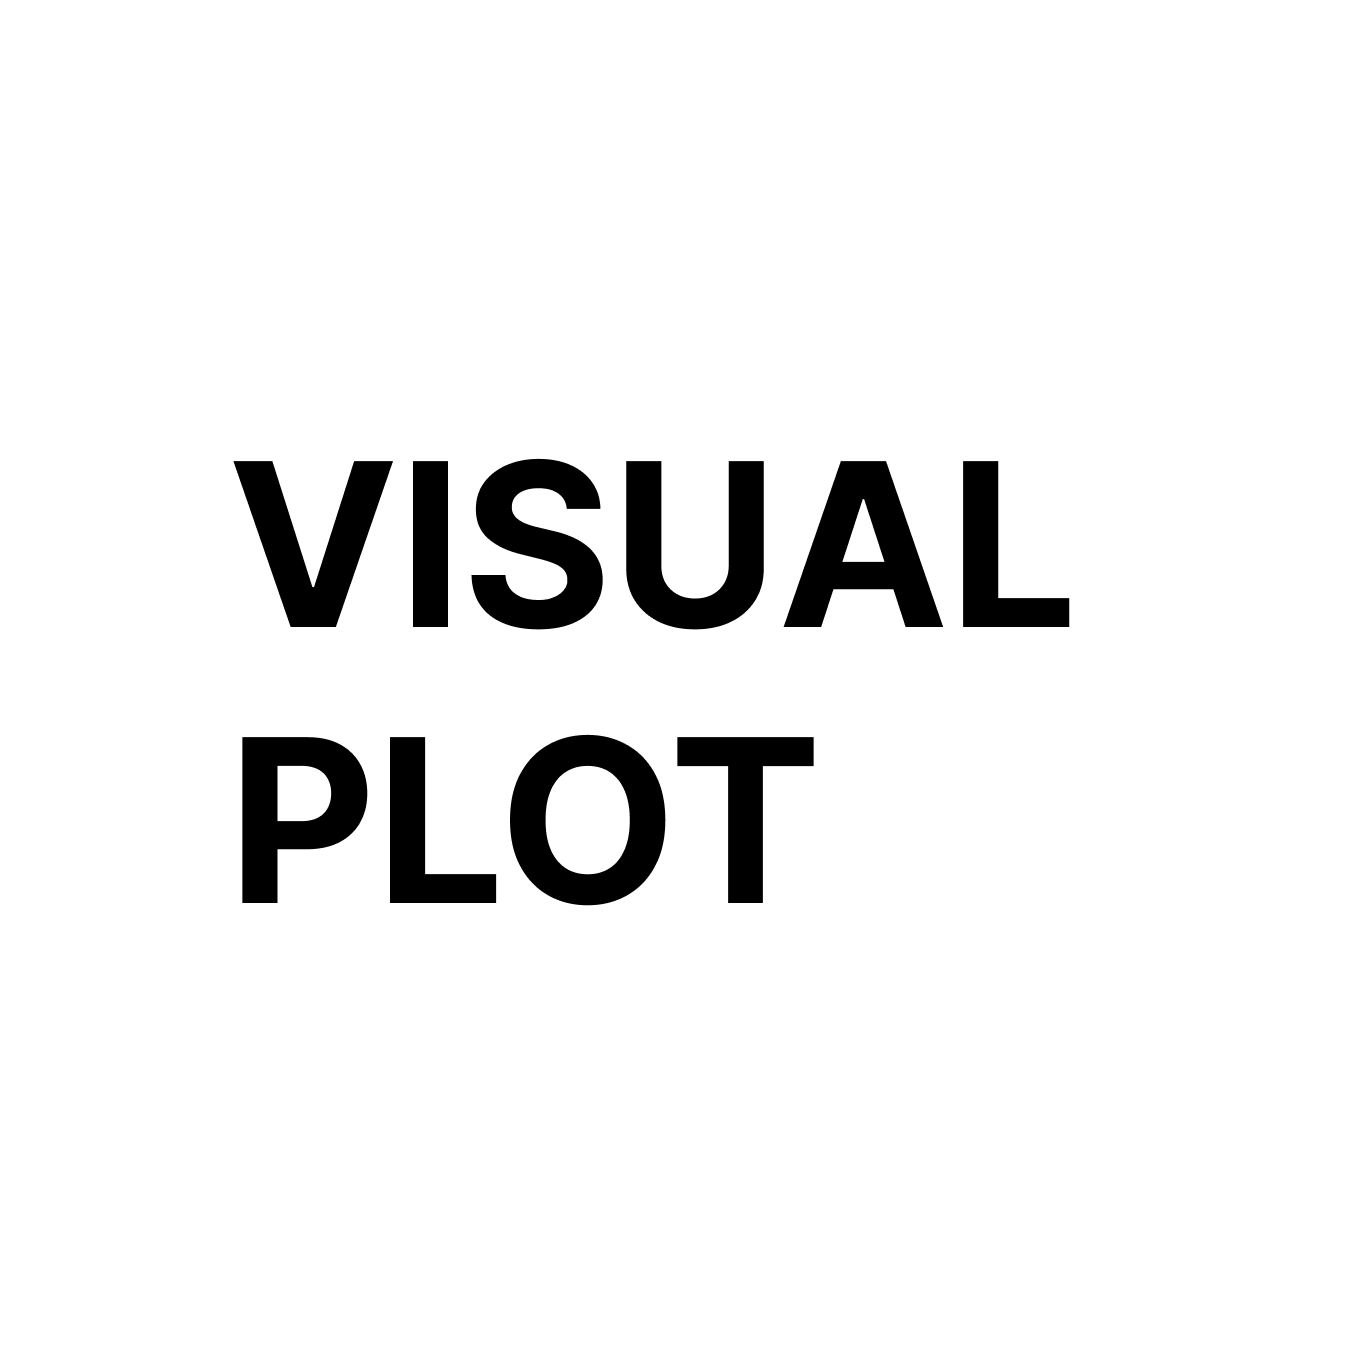 VisualPlot